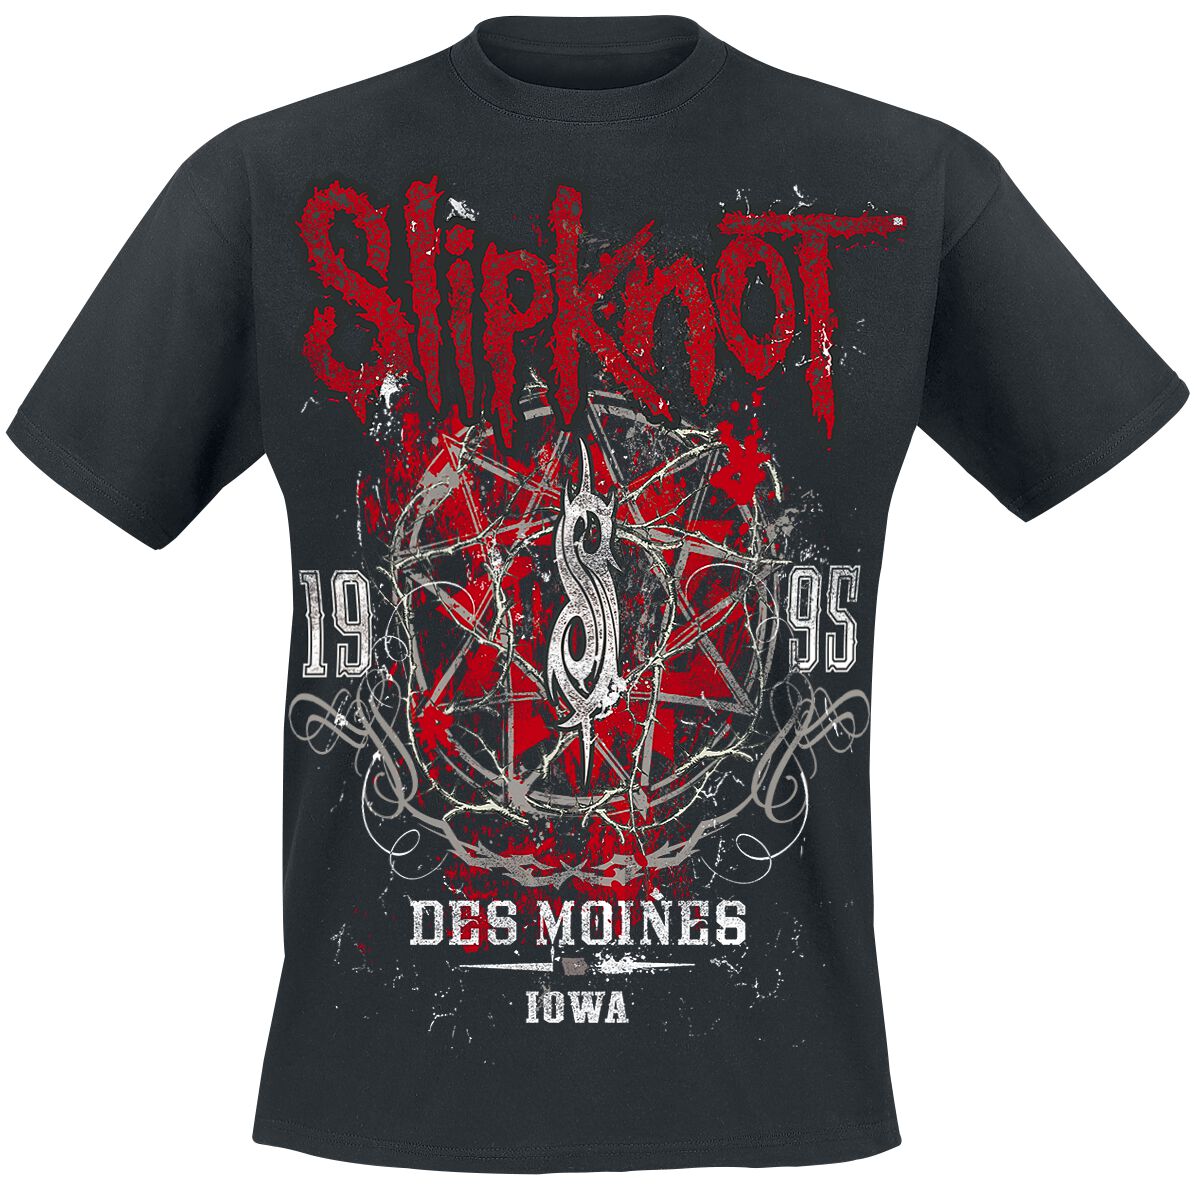 Slipknot T-Shirt - Iowa Star - S bis 5XL - für Männer - Größe M - schwarz  - Lizenziertes Merchandise!